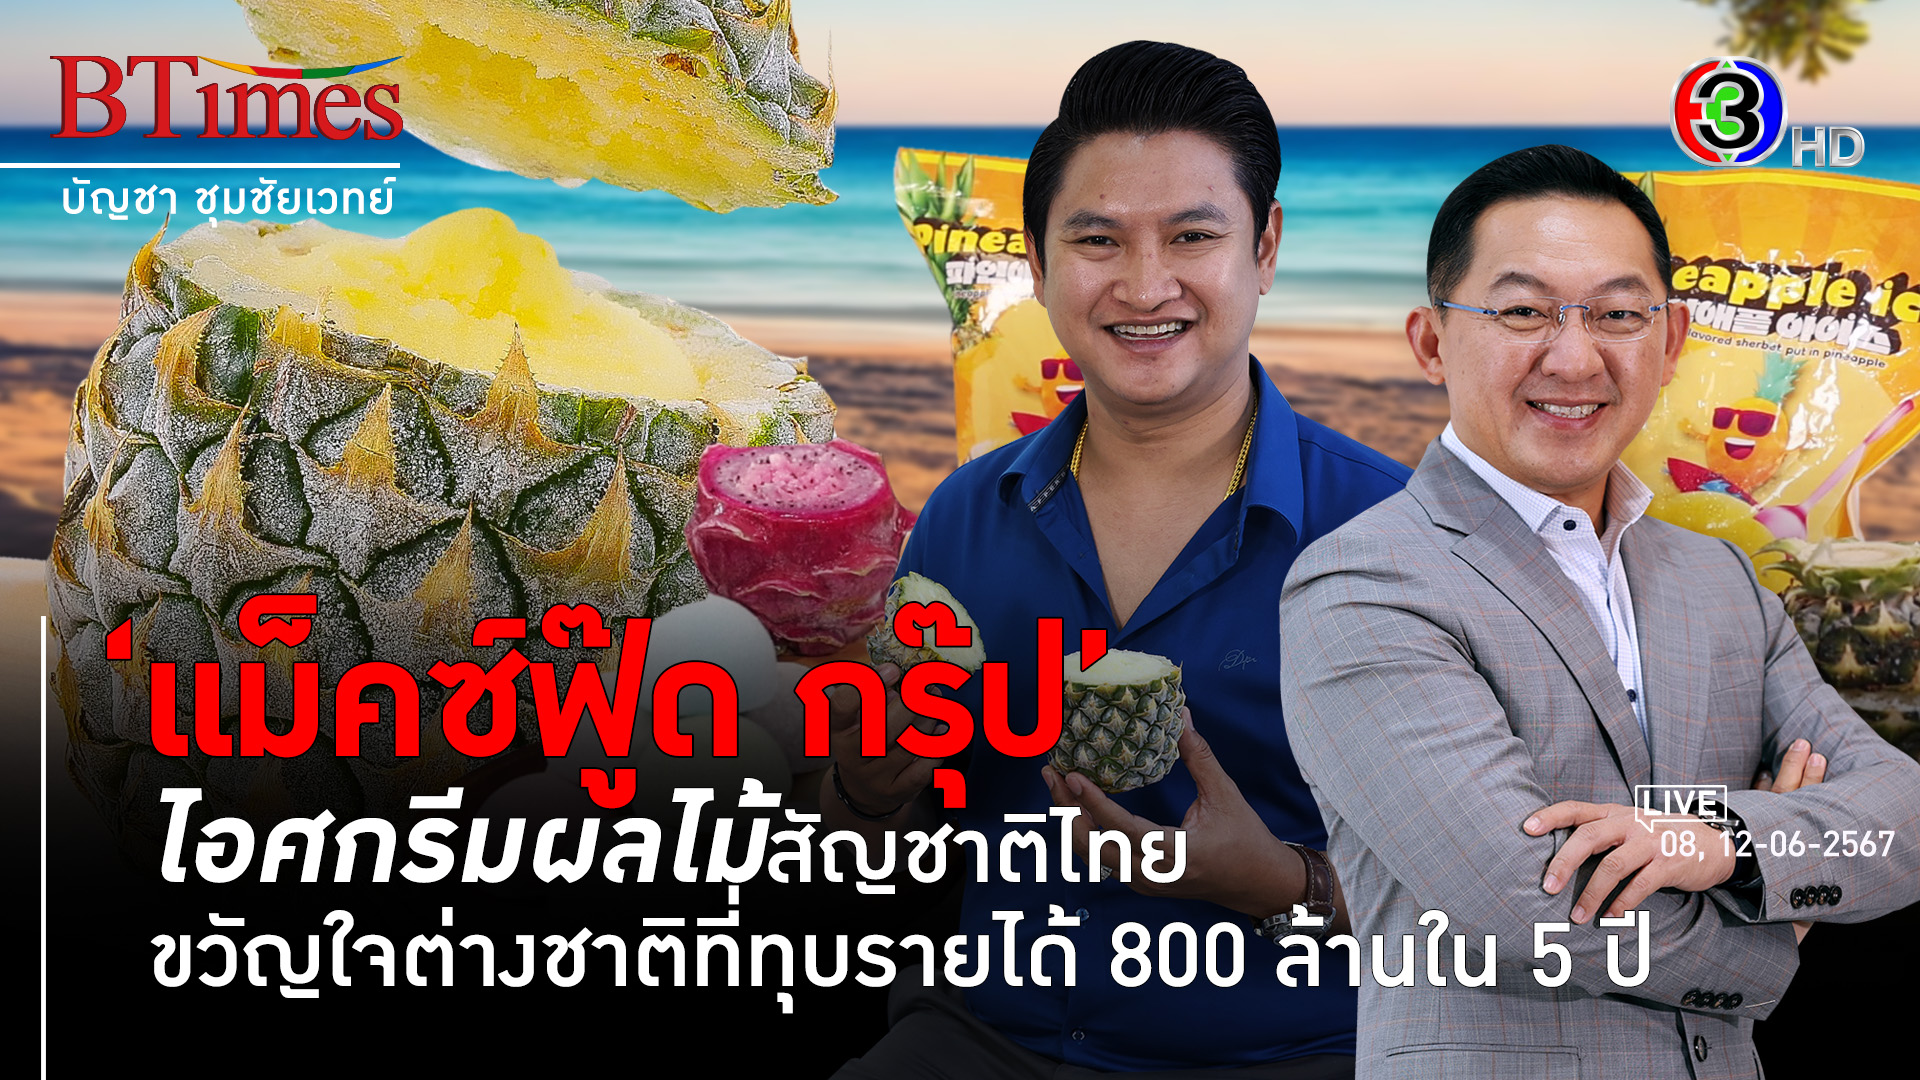 ถอดวิธีคิด-ทำ ส่งออกไอศกรีมผลไม้ไทยมีลุ้น 1,000 ล้าน l 8, 12 มิ.ย. 67 FULL l BTimes